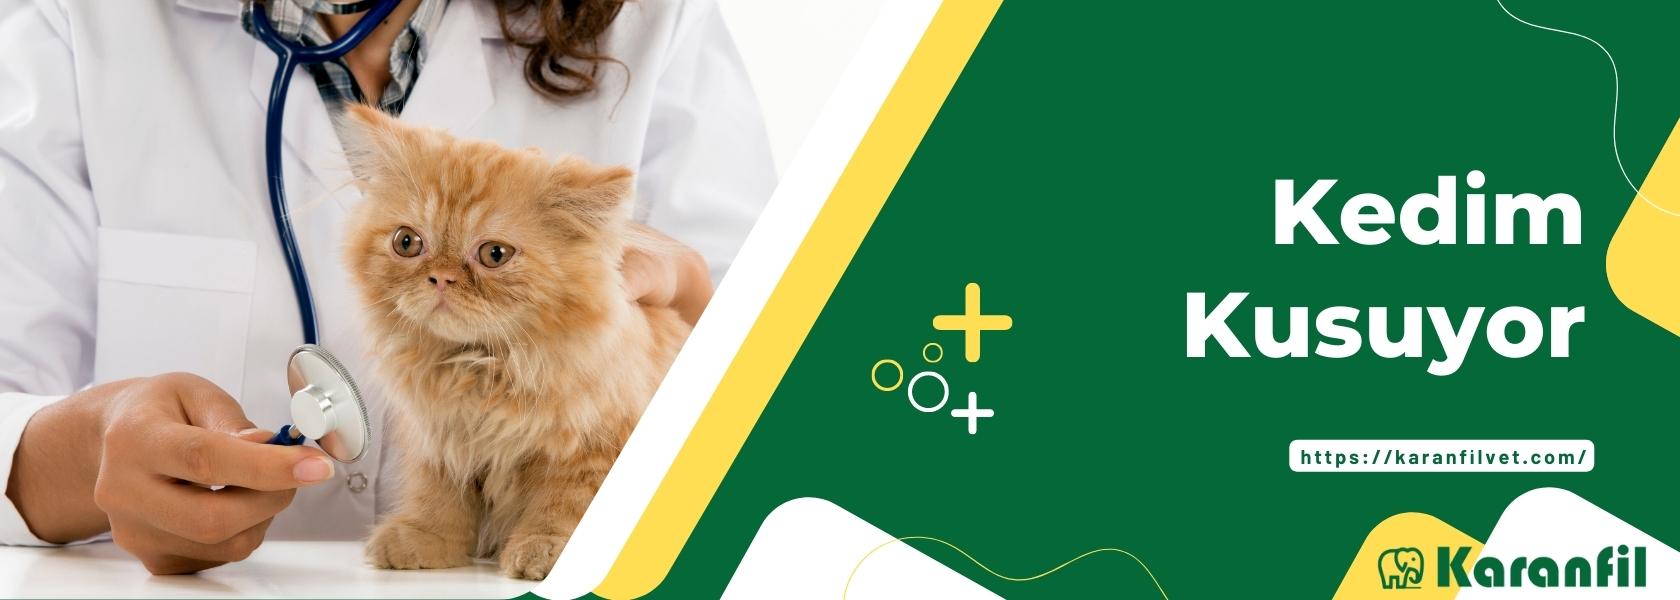 Kedim Kusuyor - Kedim Neden Kusuyor - Kedim Hasta 2022